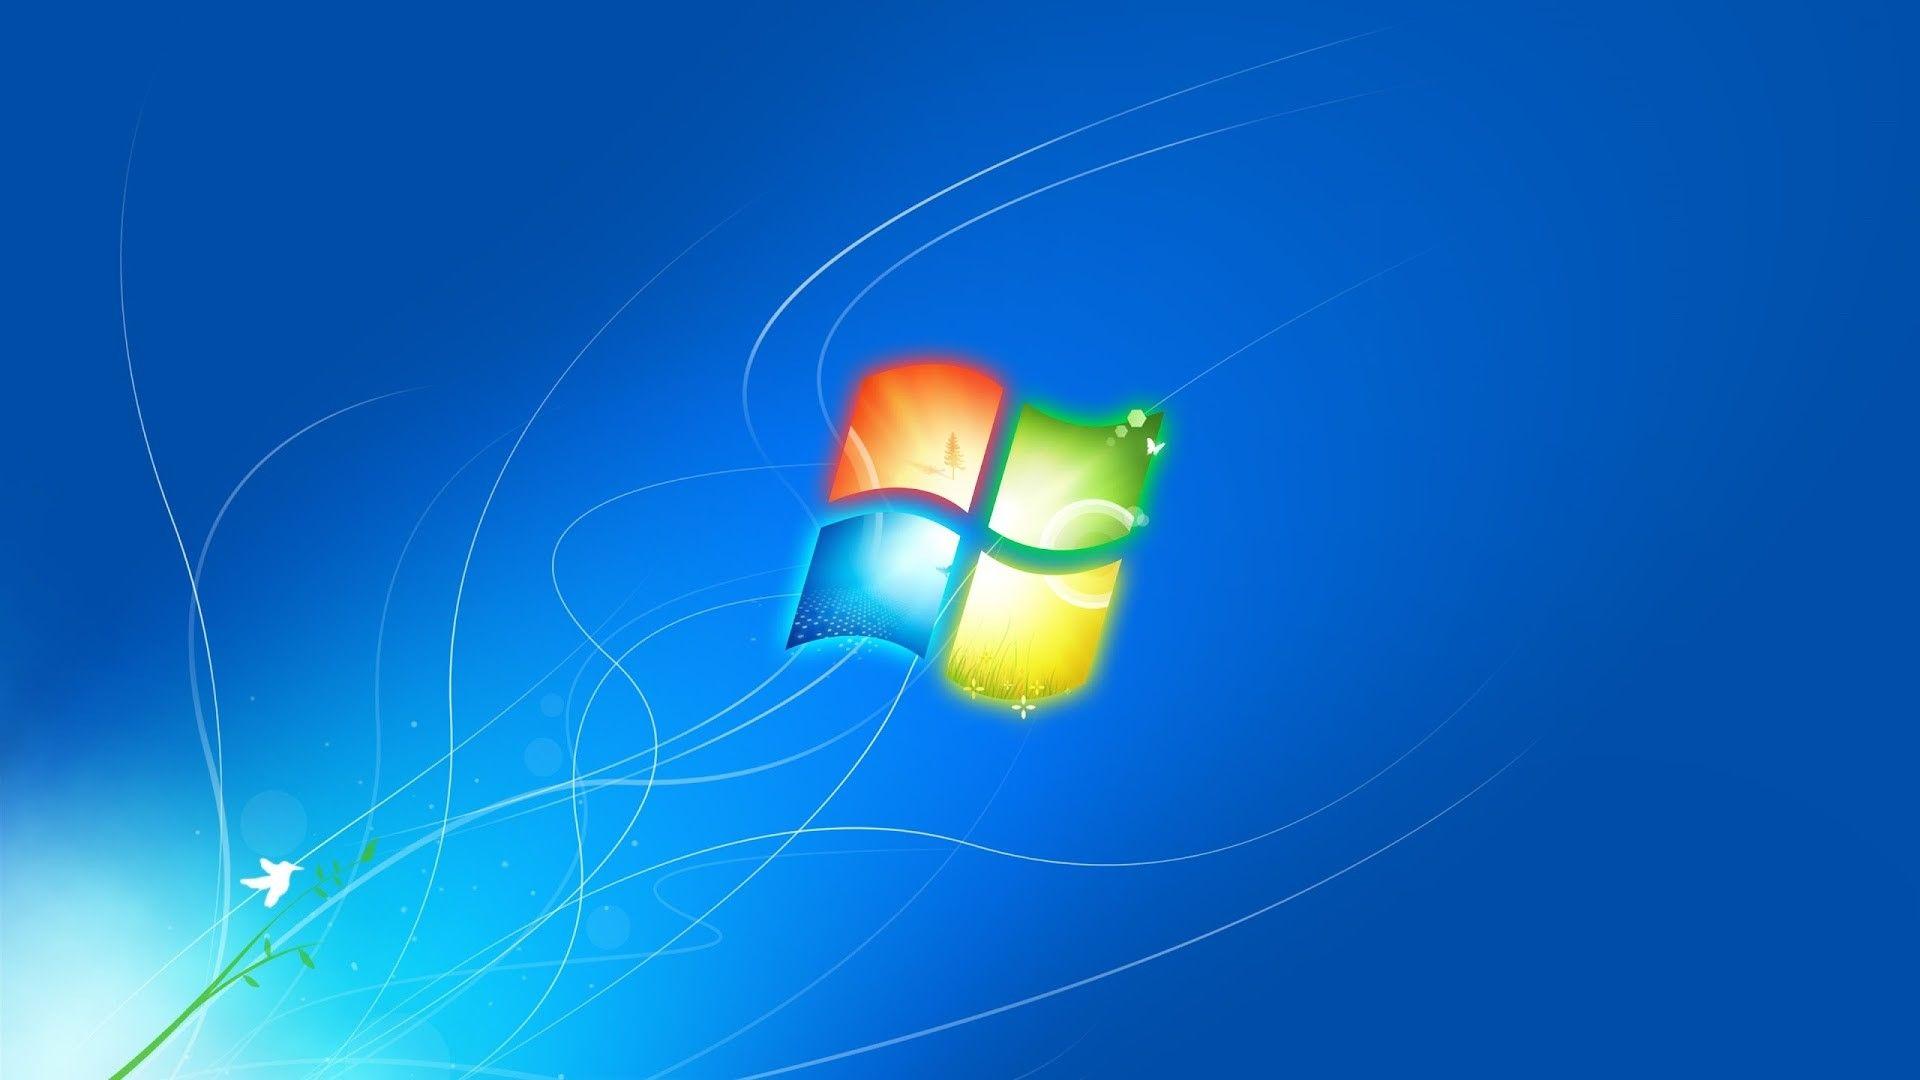 Wallpaper Windows 7 Hd 3d For Laptop Image Num 14